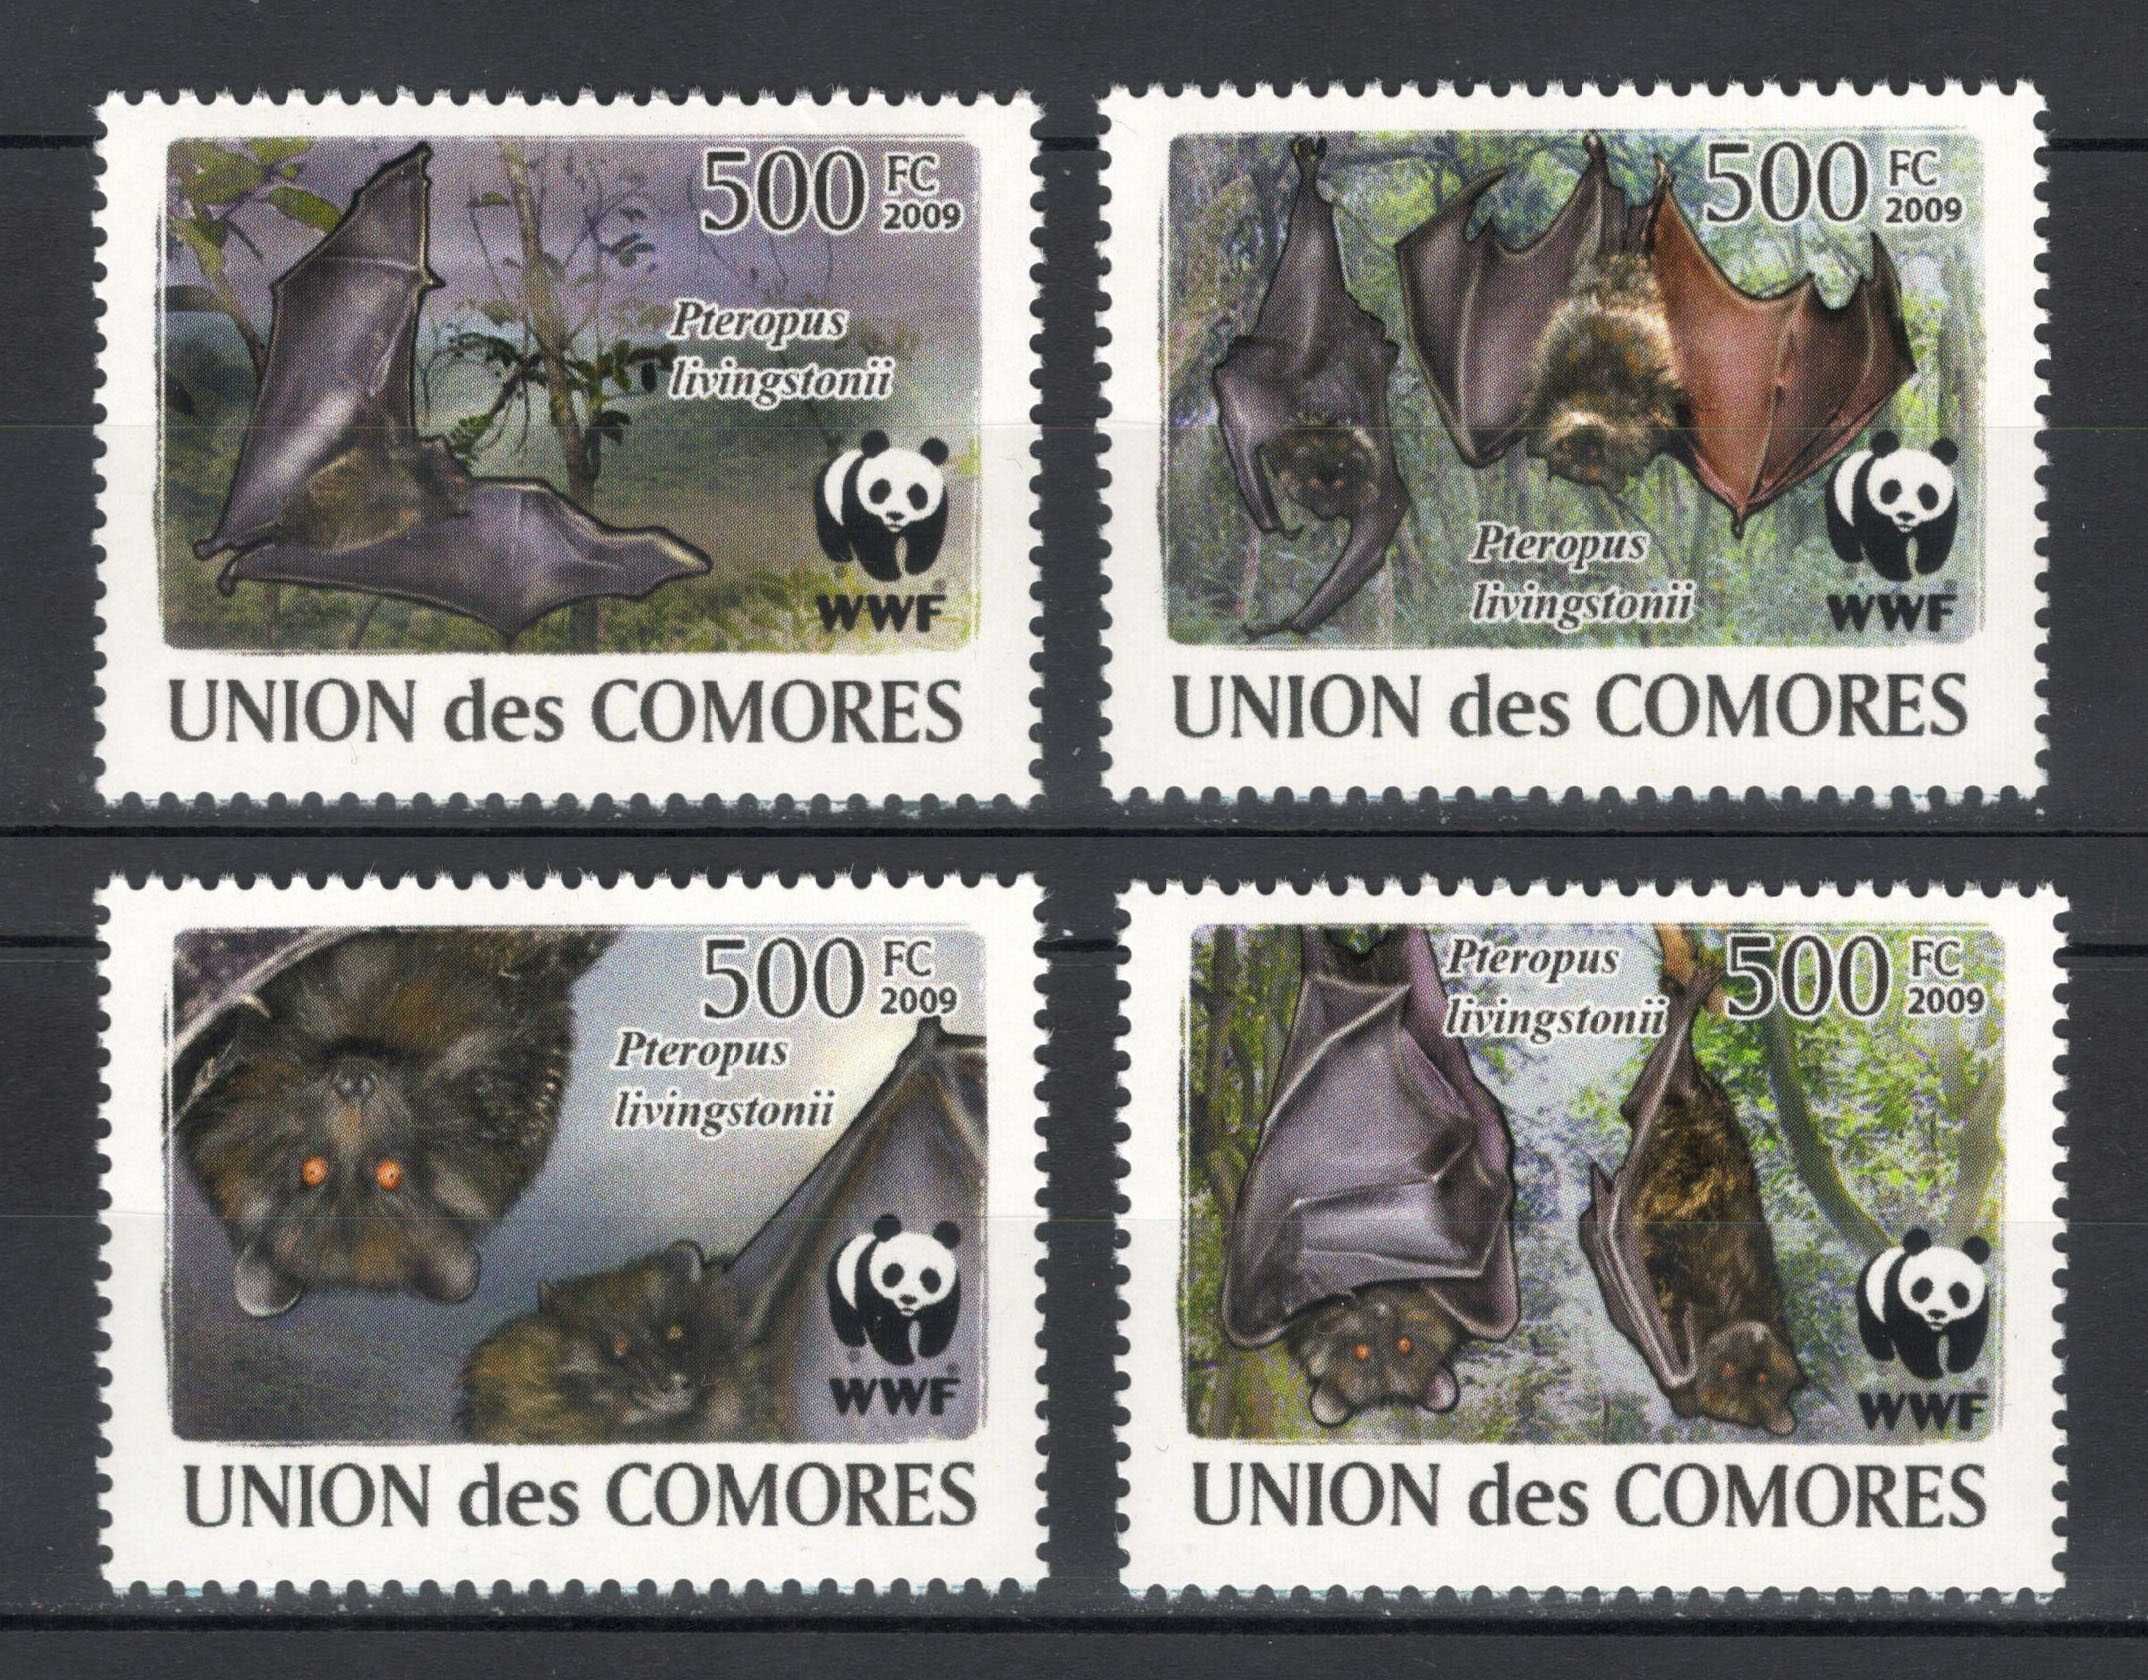 Tchad 2017 - Fauna WWF, Pasari - Serie de 4 timbre - Nestampilata mnh